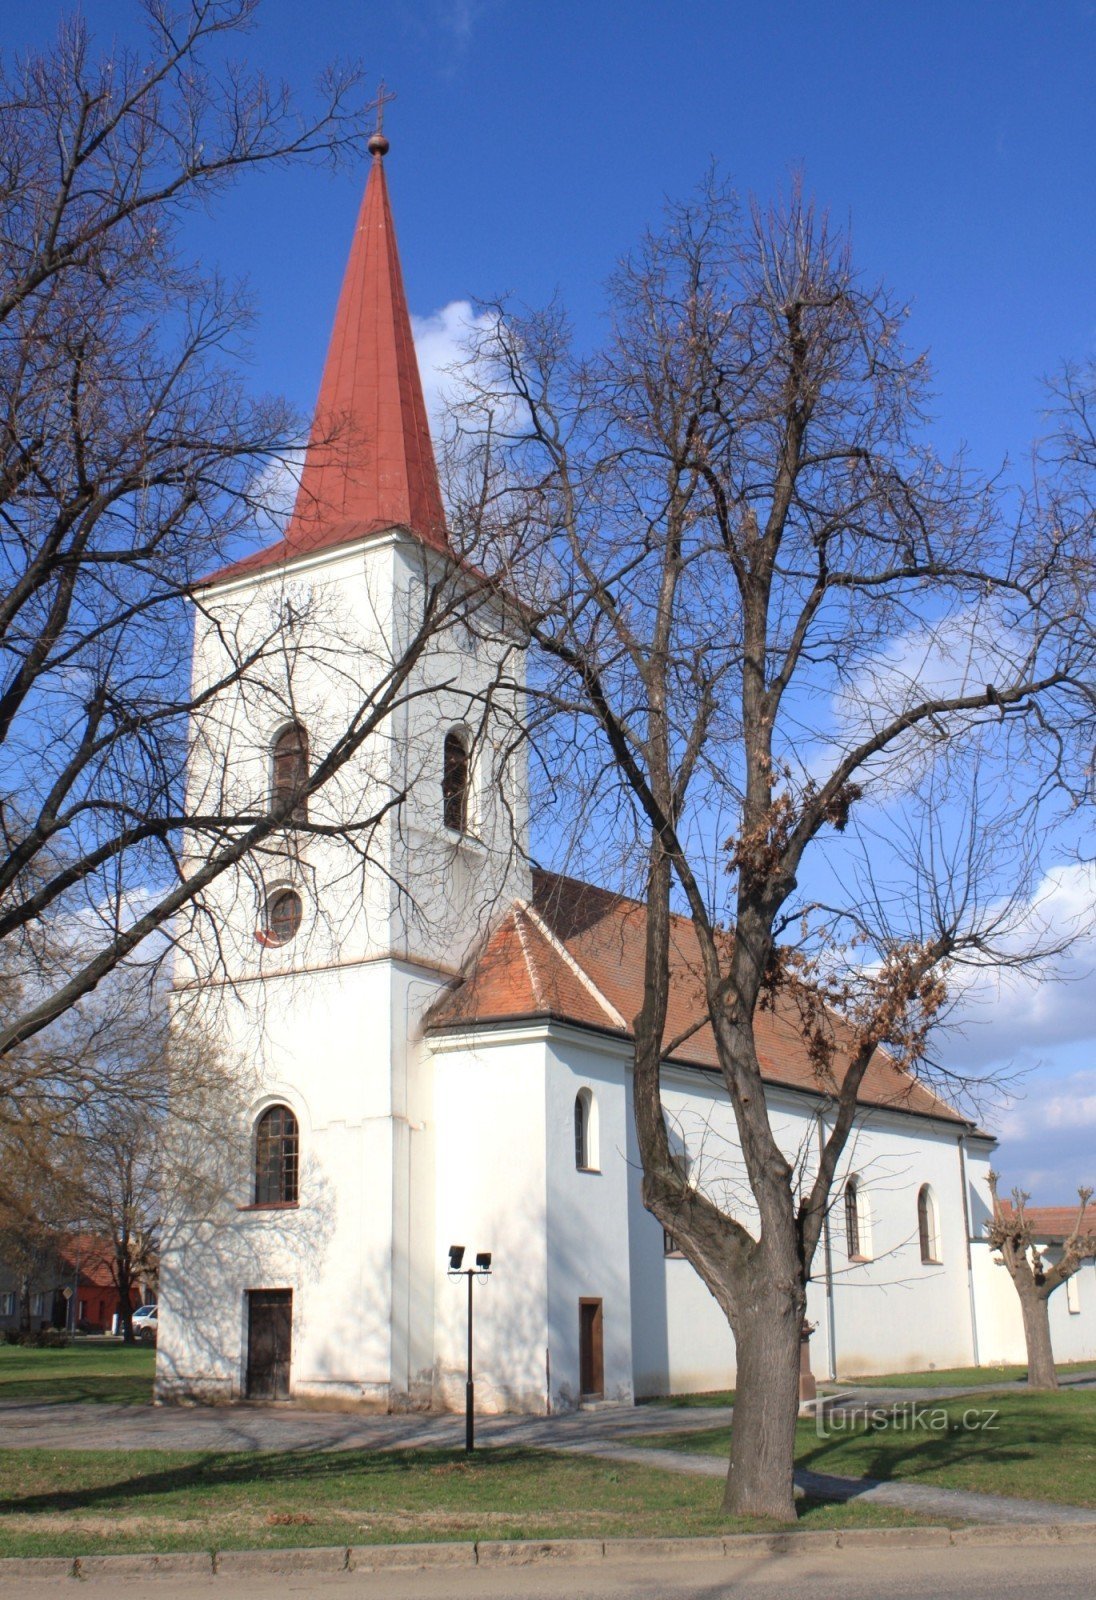 Rakvice - Kerk van St. Johannes de Doper